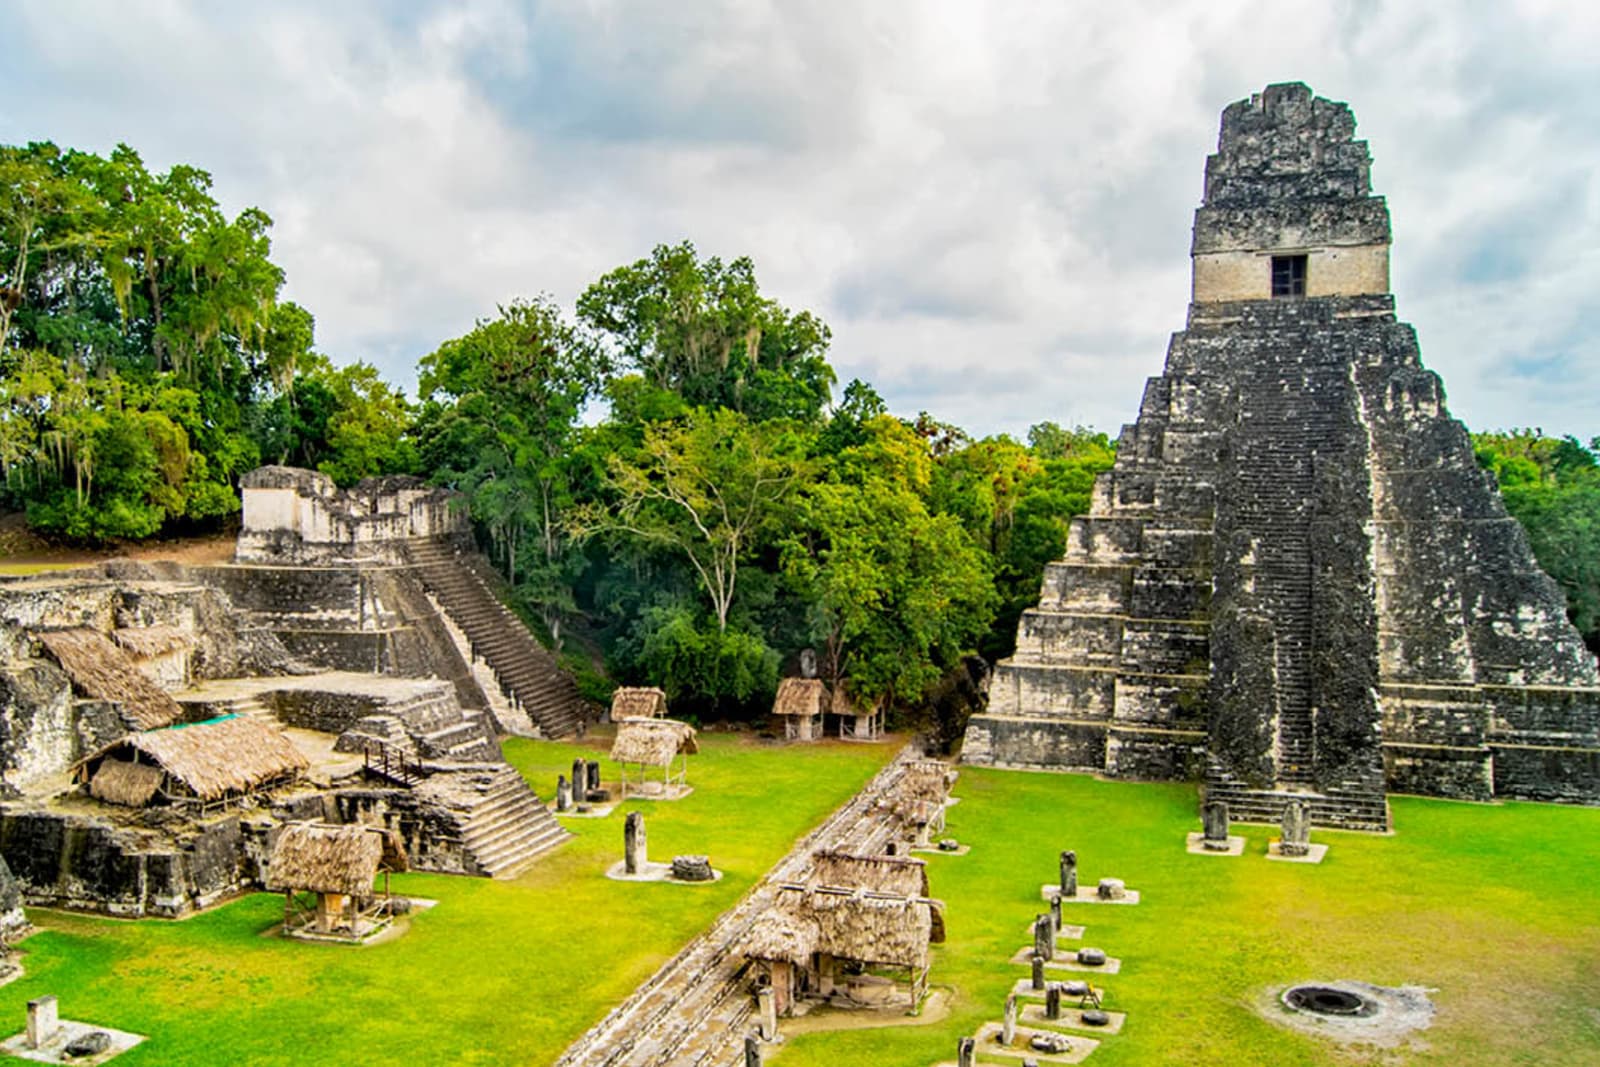 Mayan ruins in Tikal National Park, Guatemala